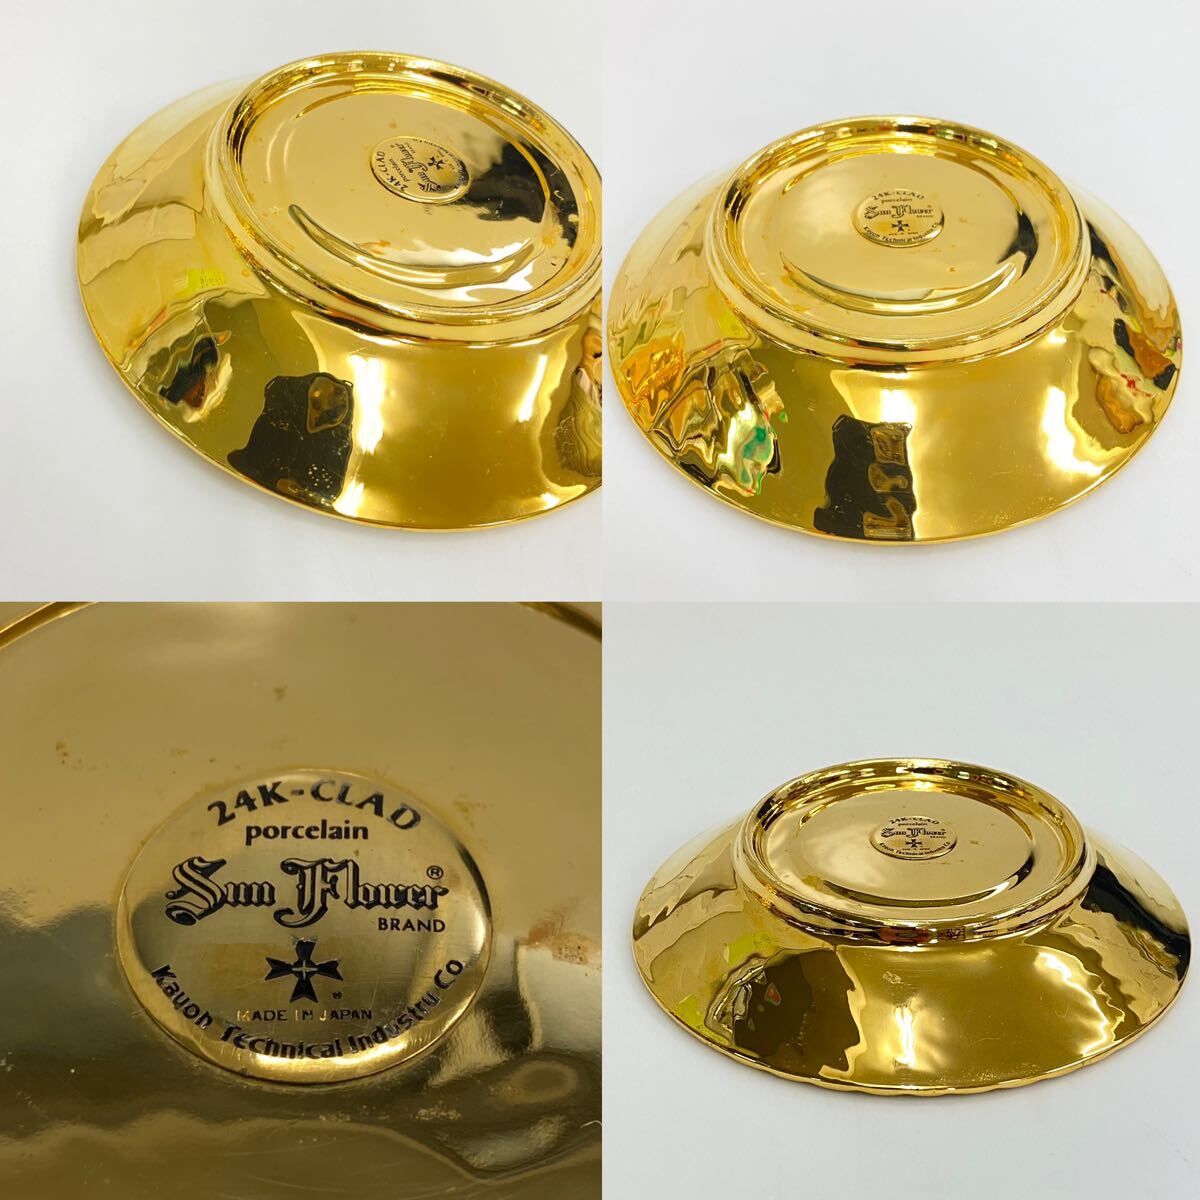 T36 陶磁器 sun flower 24K-CLAD カップ&ソーサー 金色 ゴールド 1個セット Kayon Technical Industry CO 金彩 日本製 コーヒーカップ の画像7